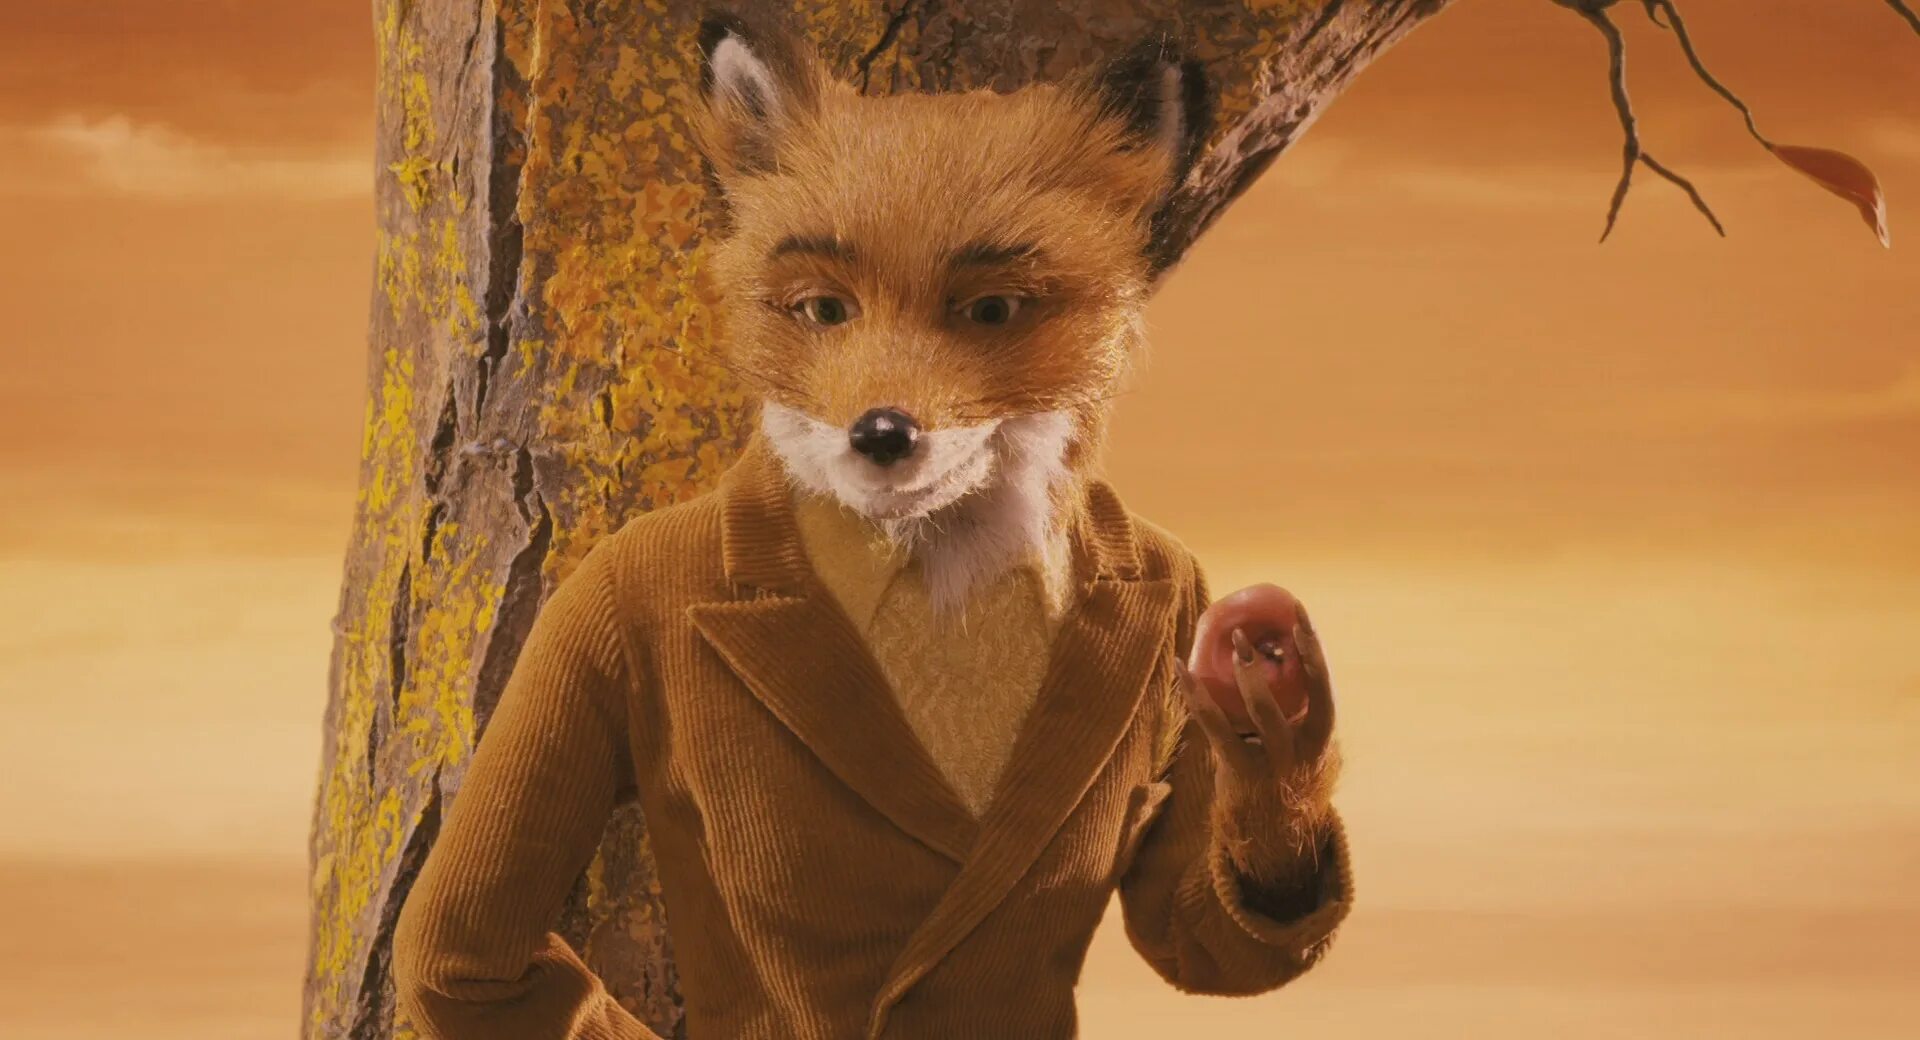 Бесподобный митерфокс. Бесподобный Мистер Фокс 2009. Уэс Андерсон бесподобный Мистер Фокс. Бесподобный Мистер Фокс (fantastic Mr. Fox), 2009. Mister fox